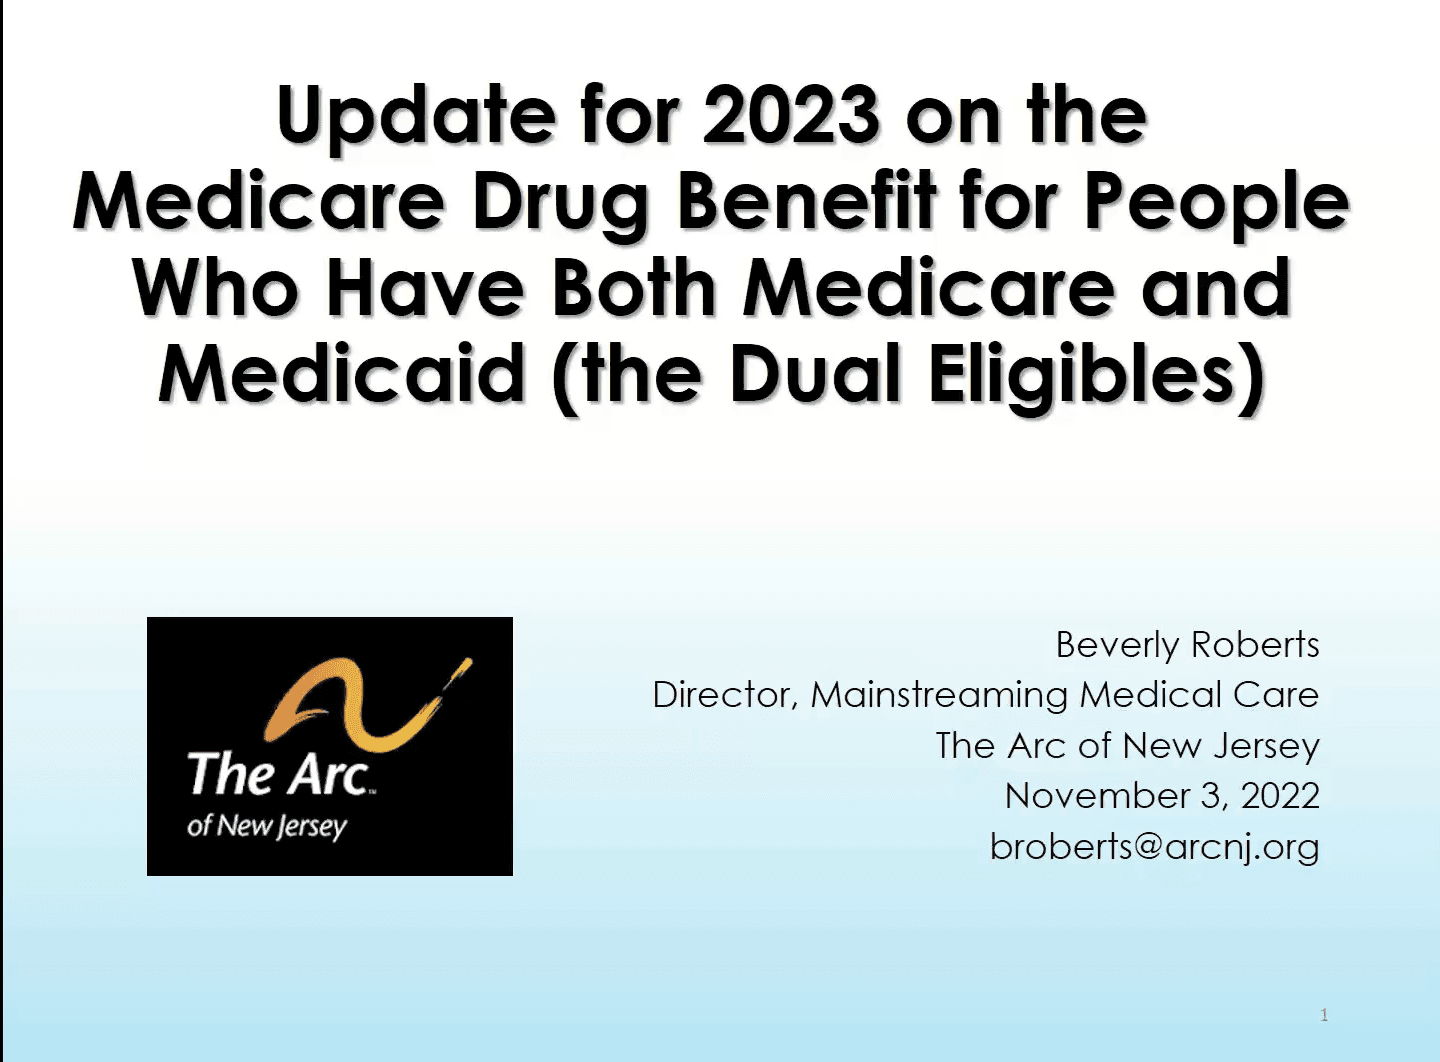 11/3/22 Webinar recording - Medicare Part D Drug Plans for Dual-Eligibles